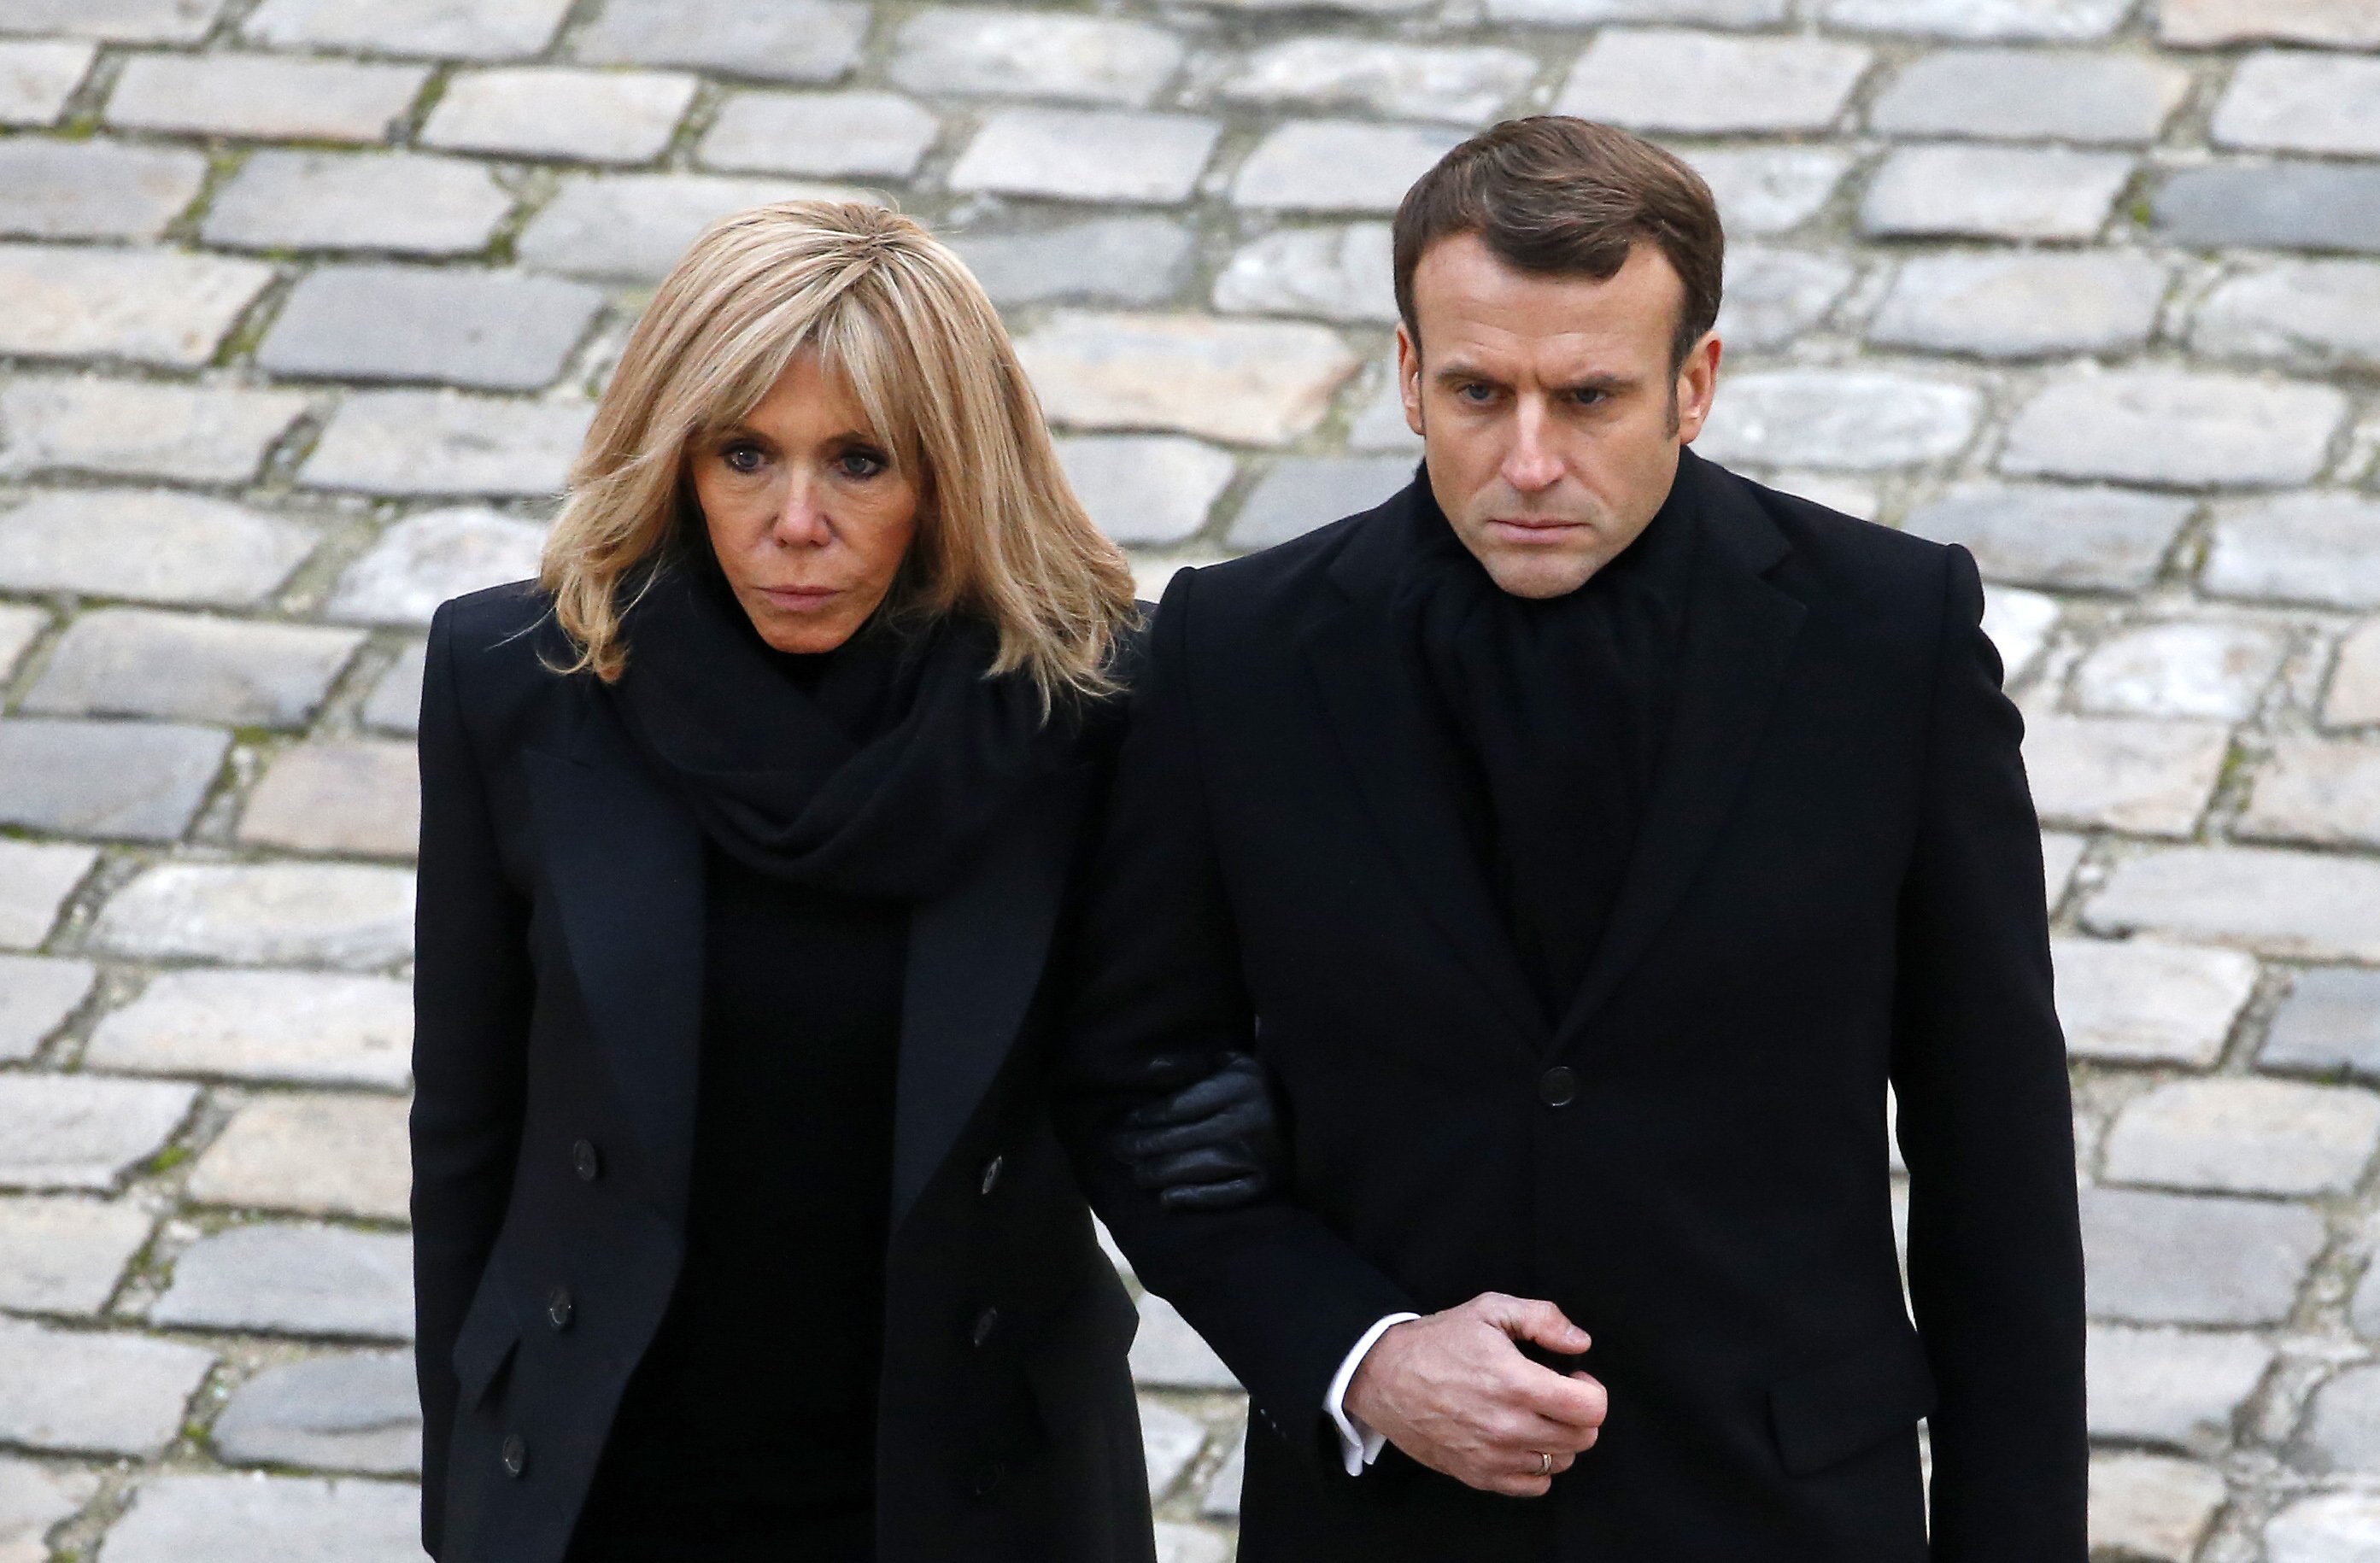 Emmanuel Macron y Brigitte Macron en el "Hotel National des Invalides", el 2 de diciembre de 2019 en París, Francia. | Foto: Getty Images